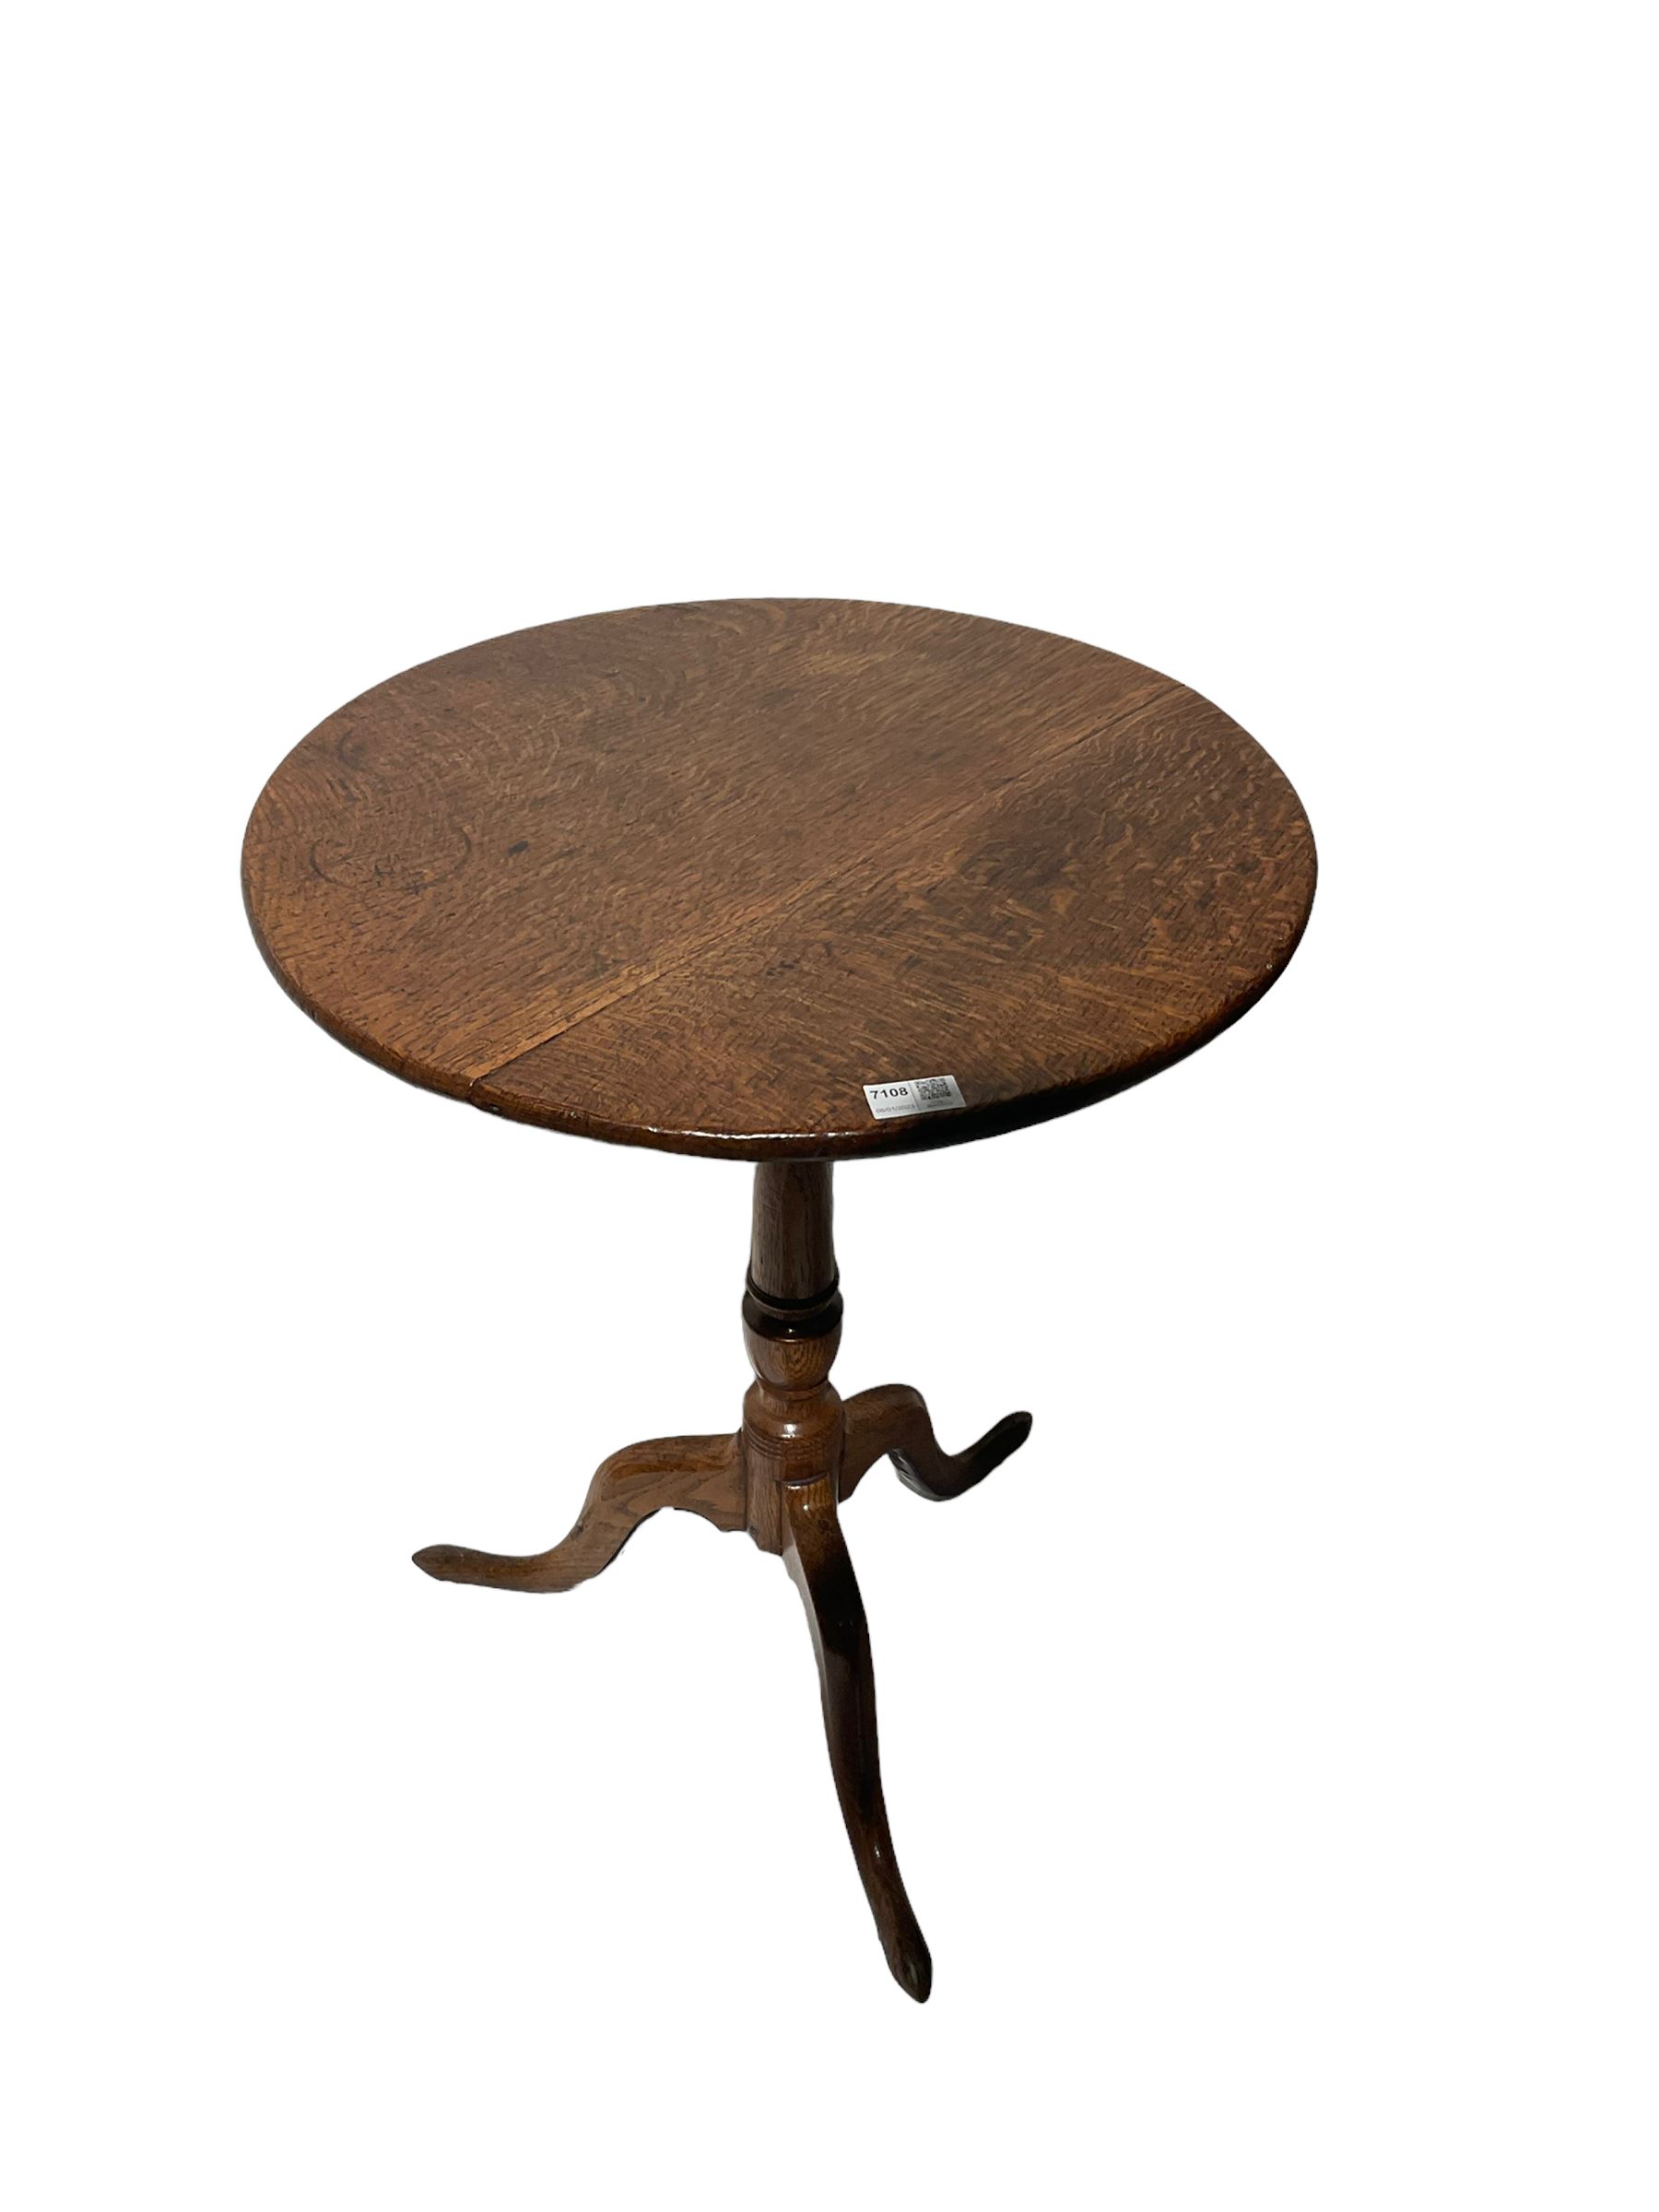 George III oak circular tripod table - Image 2 of 4